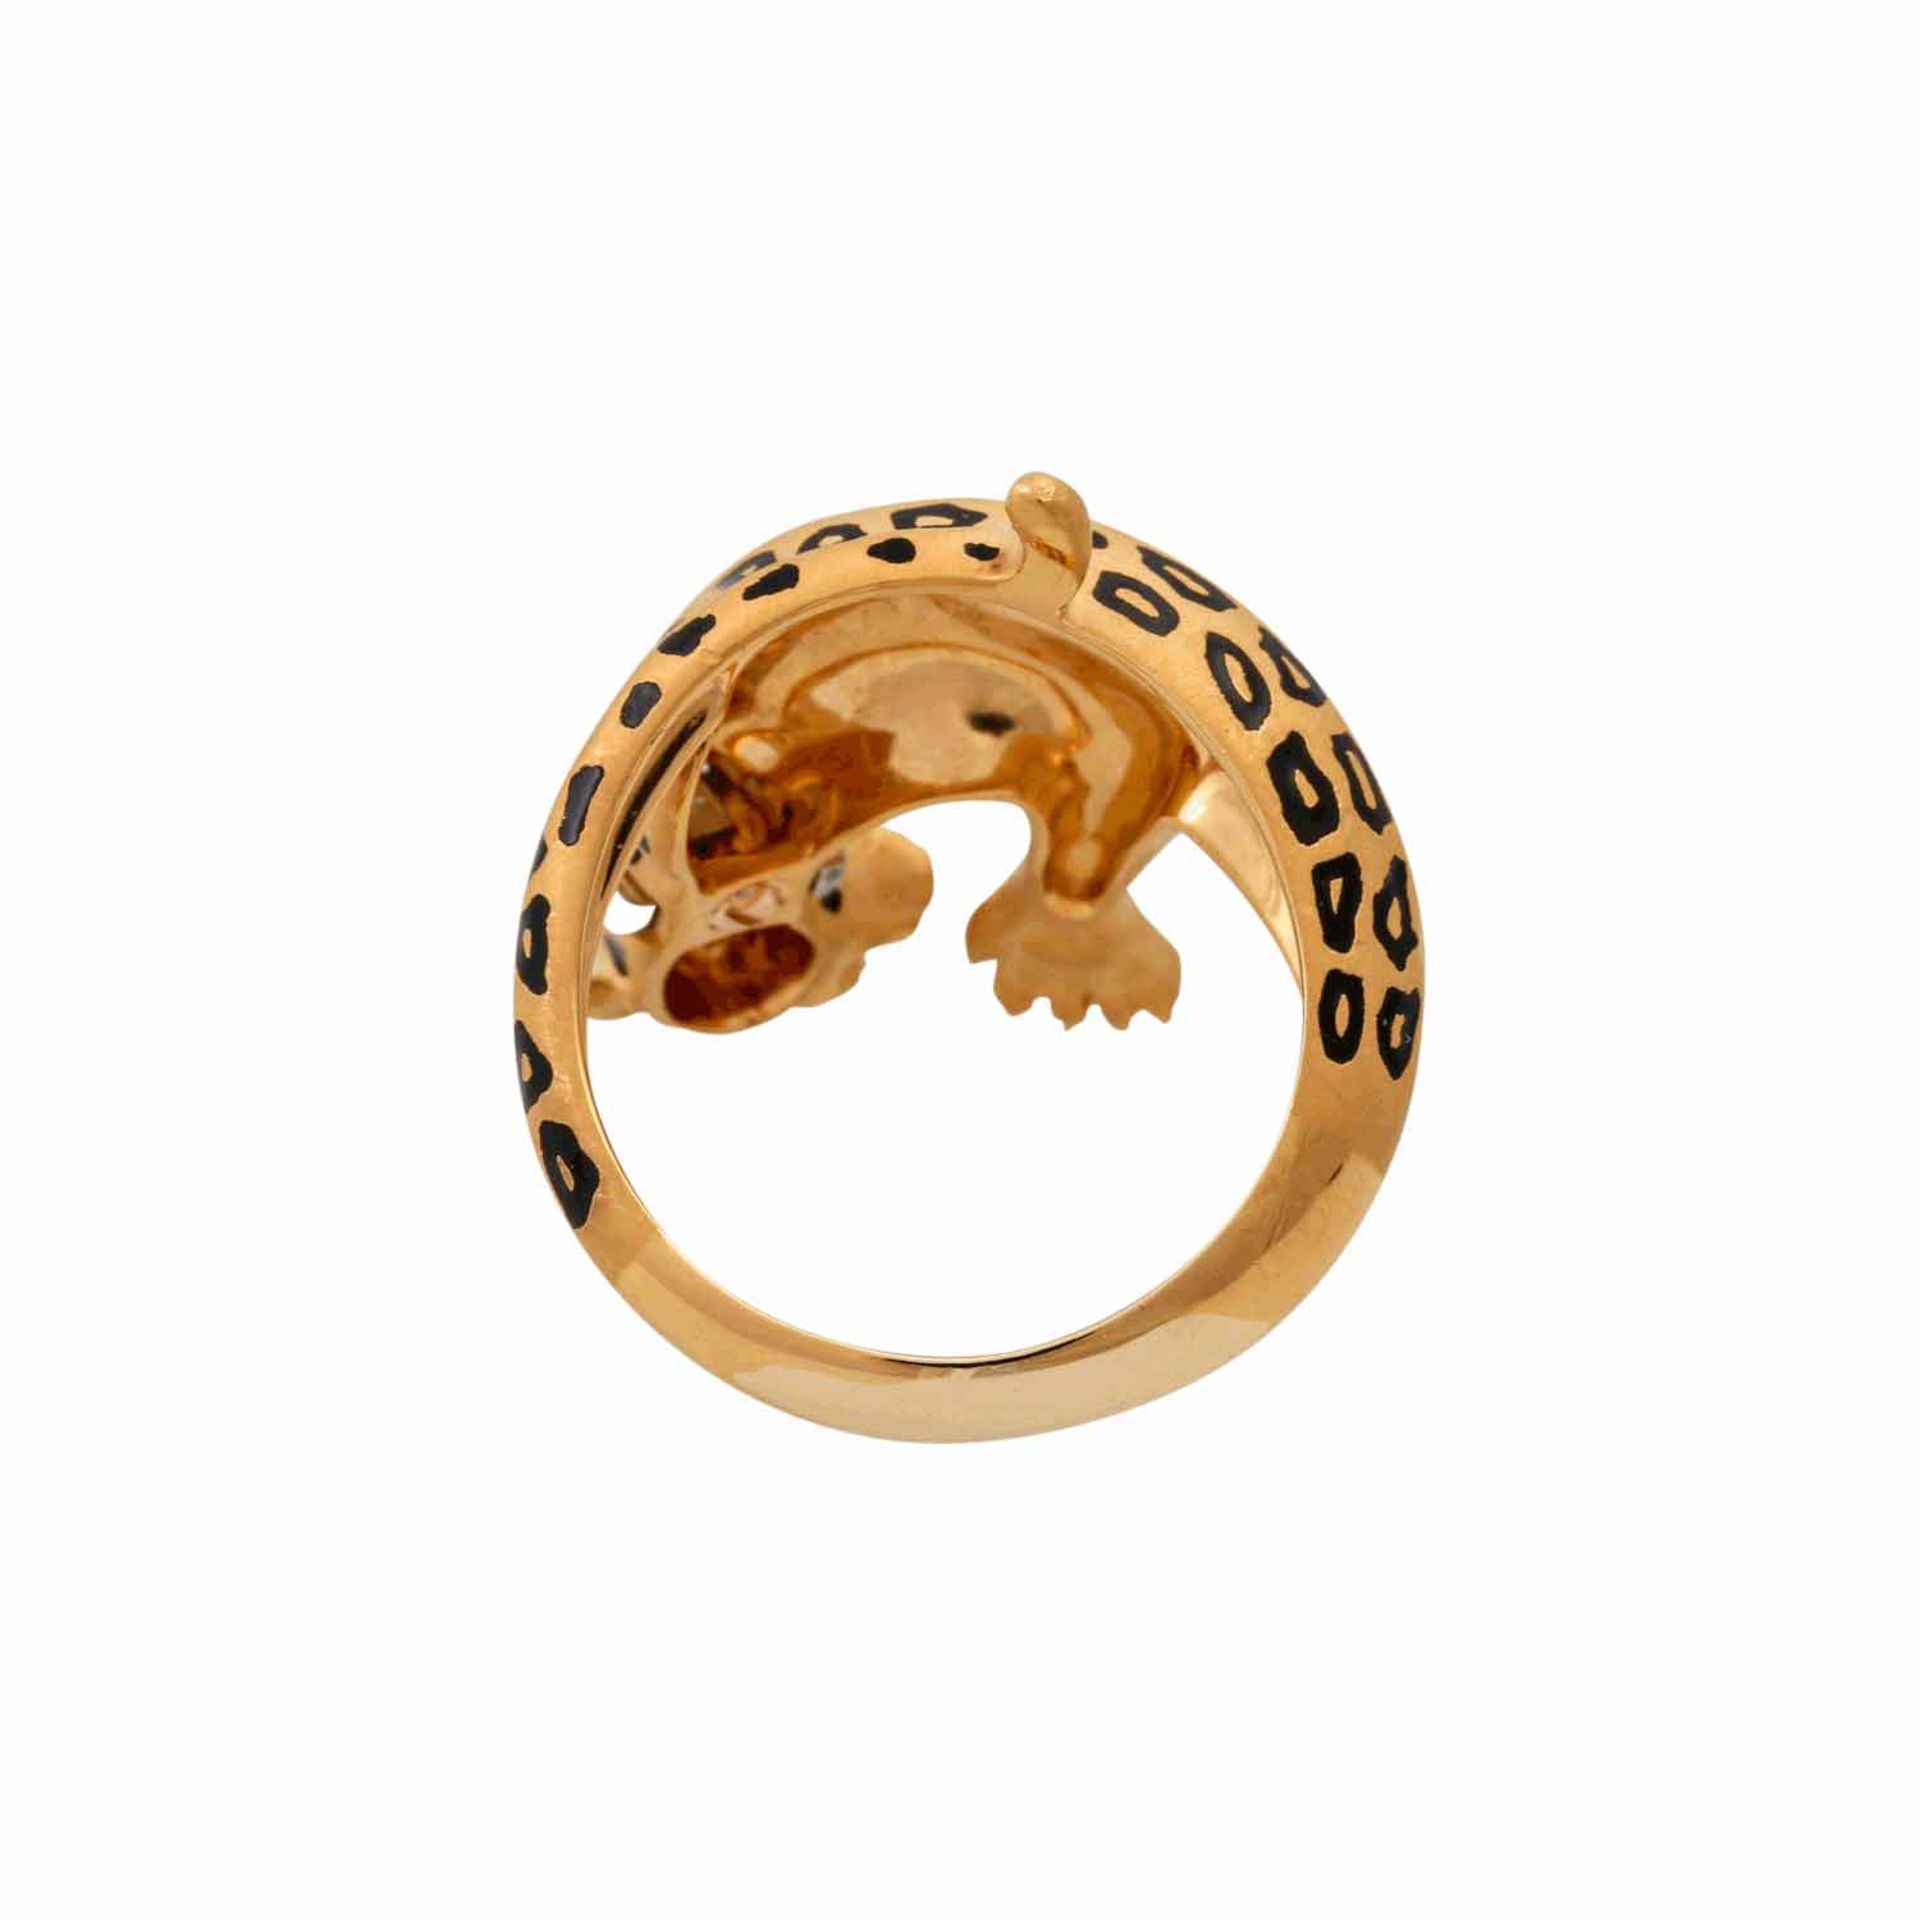 CARRERA Y CARRERA Ring "Panther"mit Brillanten von ca. 0,05 ct, 2 kl. Rubinen und sch - Bild 4 aus 5